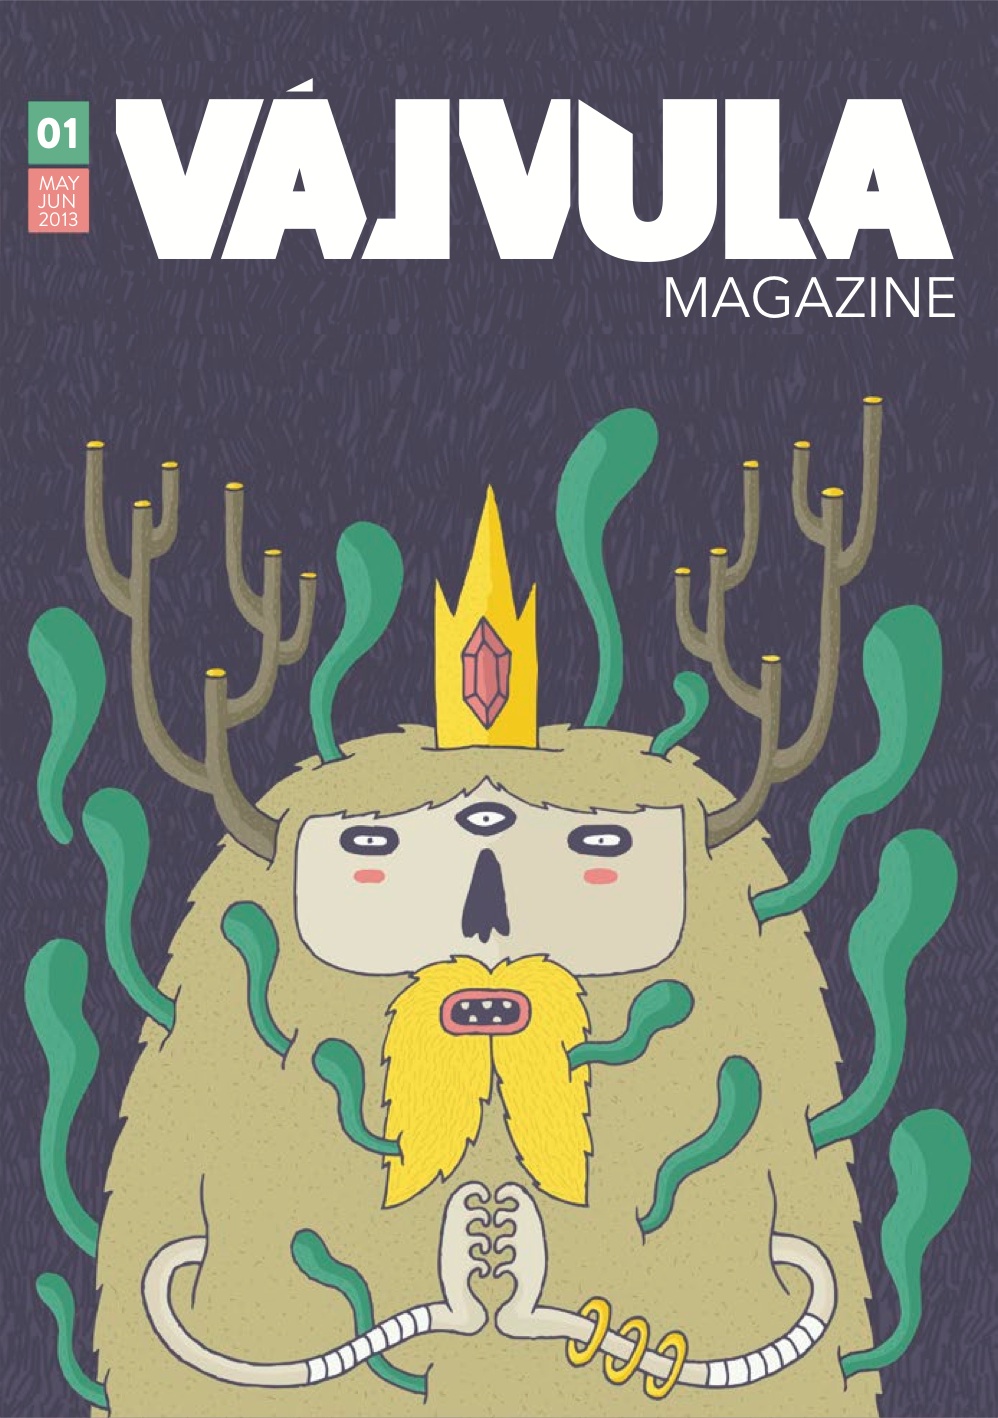 “Válvula magazine”, un nuevo órgano informativo digital ya disponible en internet